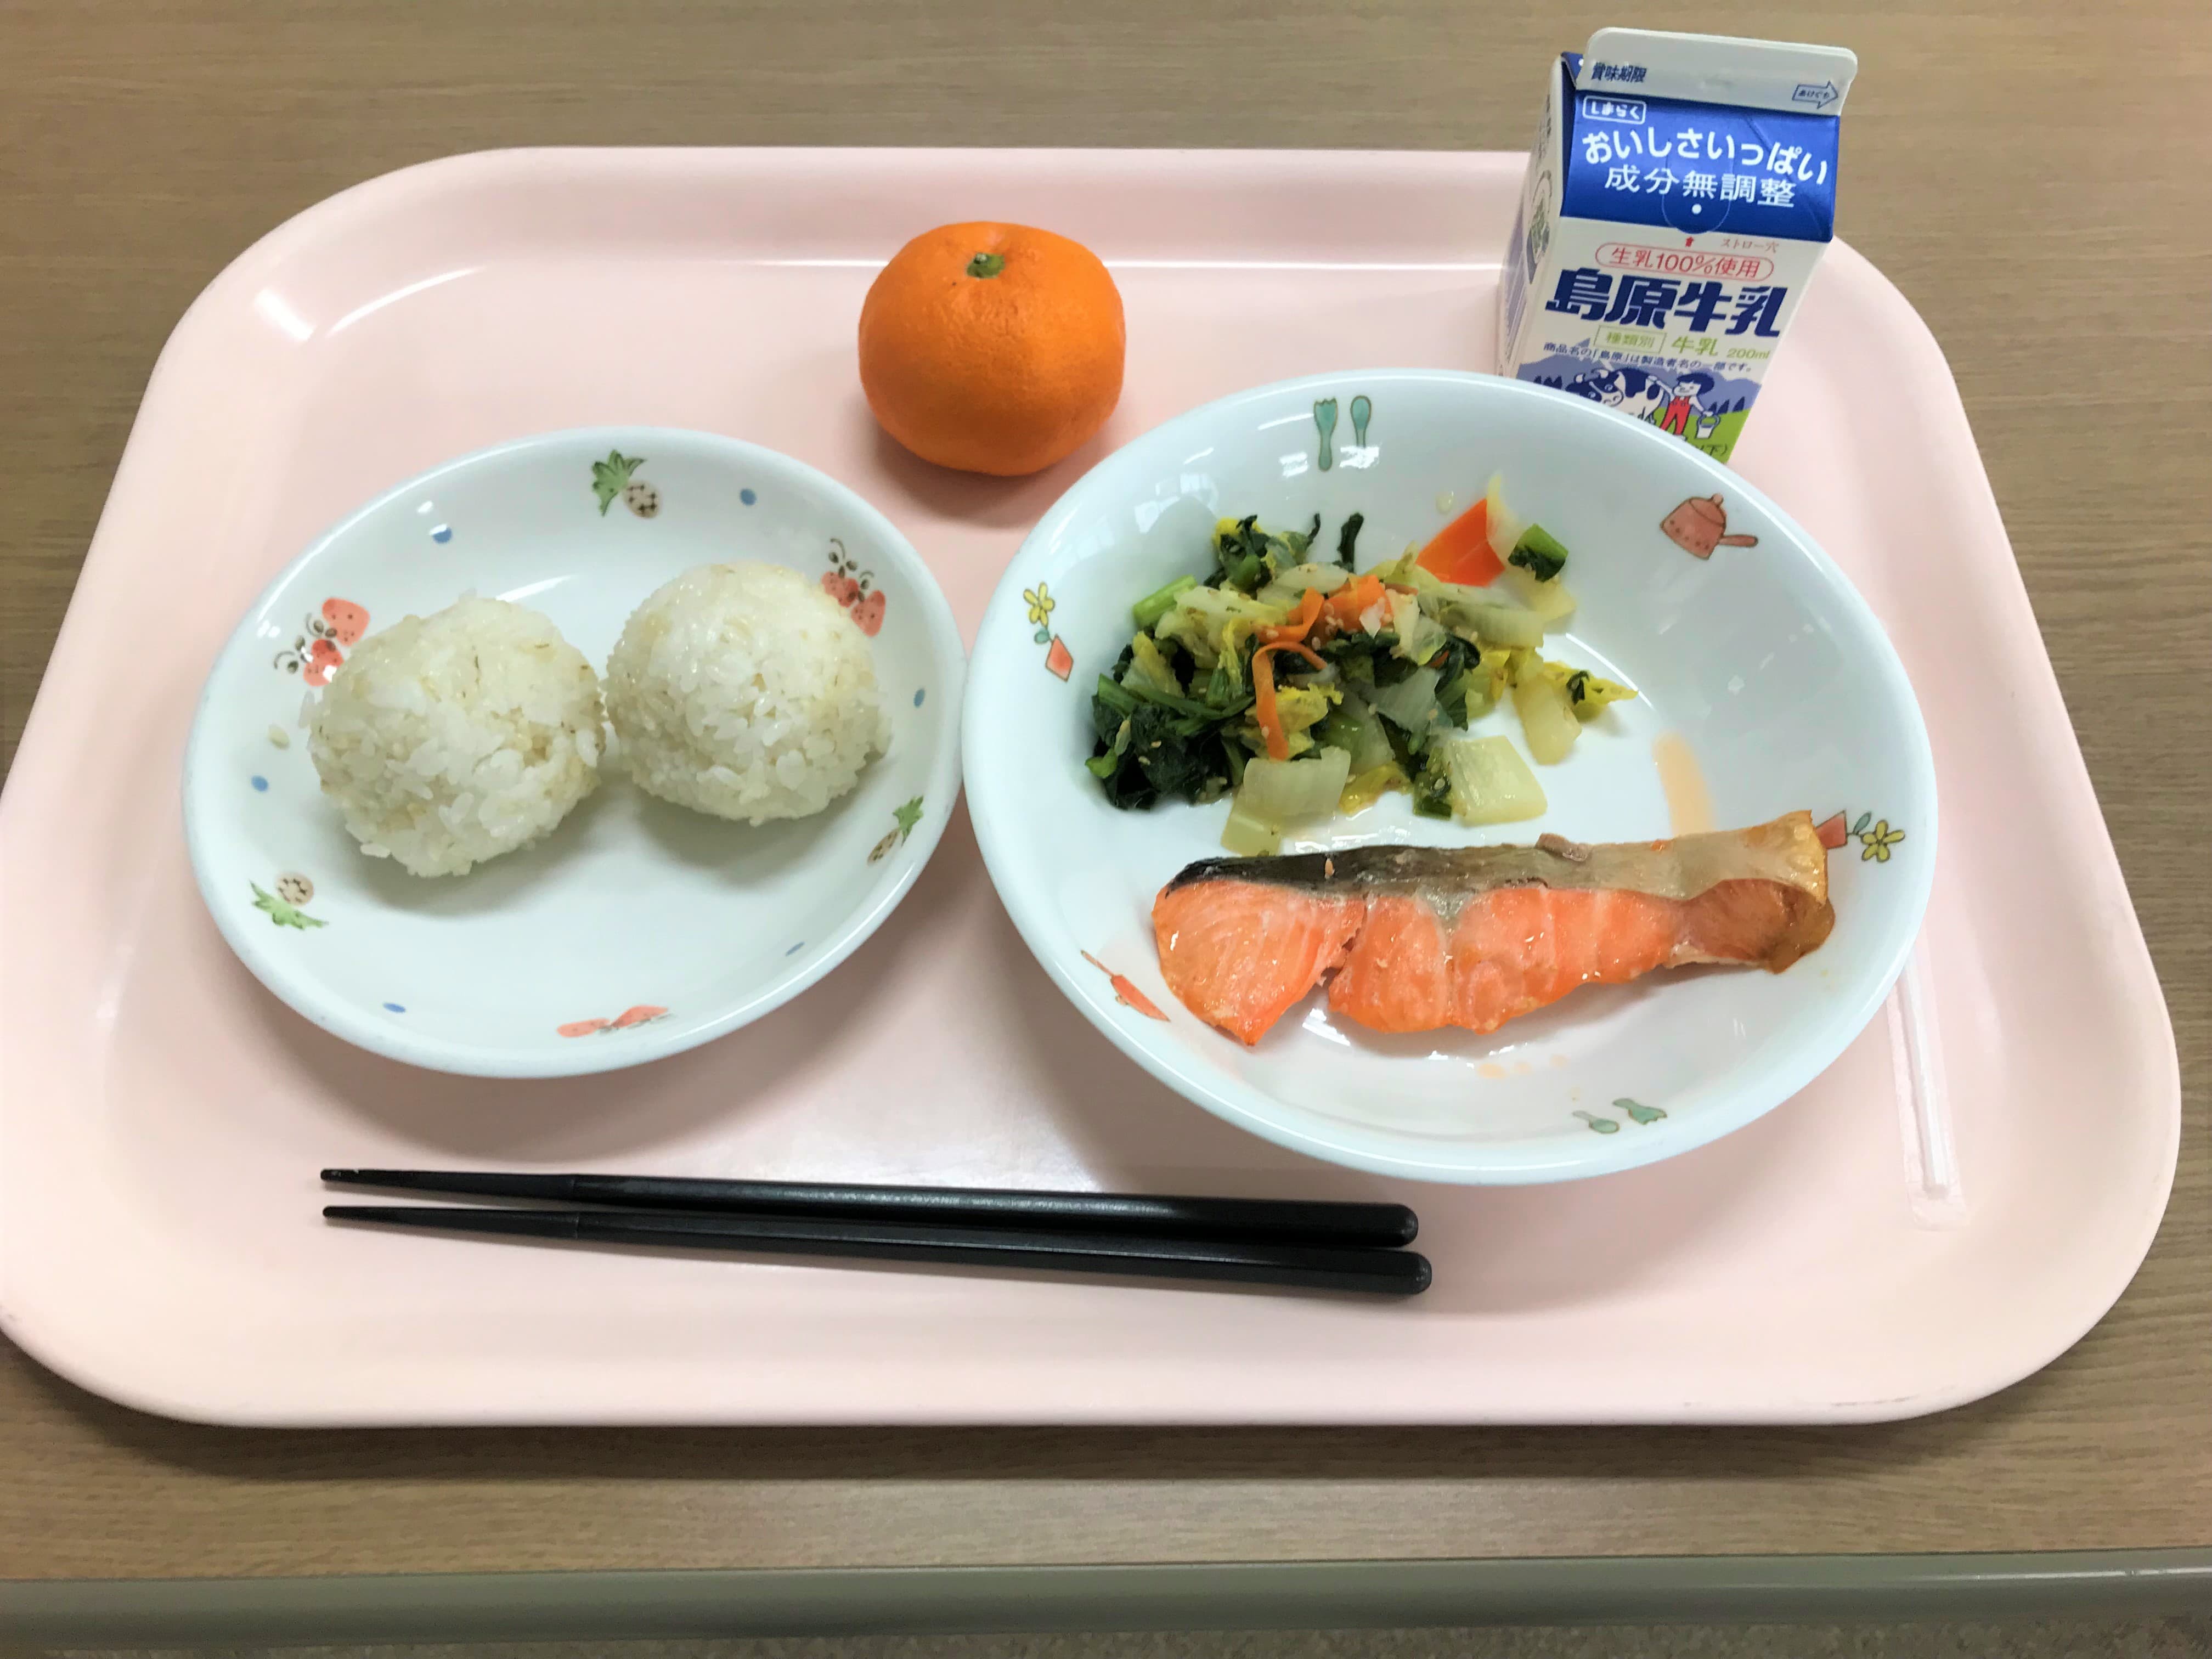 学校給食が始まった明治時代の給食の写真（おにぎり、焼き鮭、青菜の浅漬、みかん、牛乳）